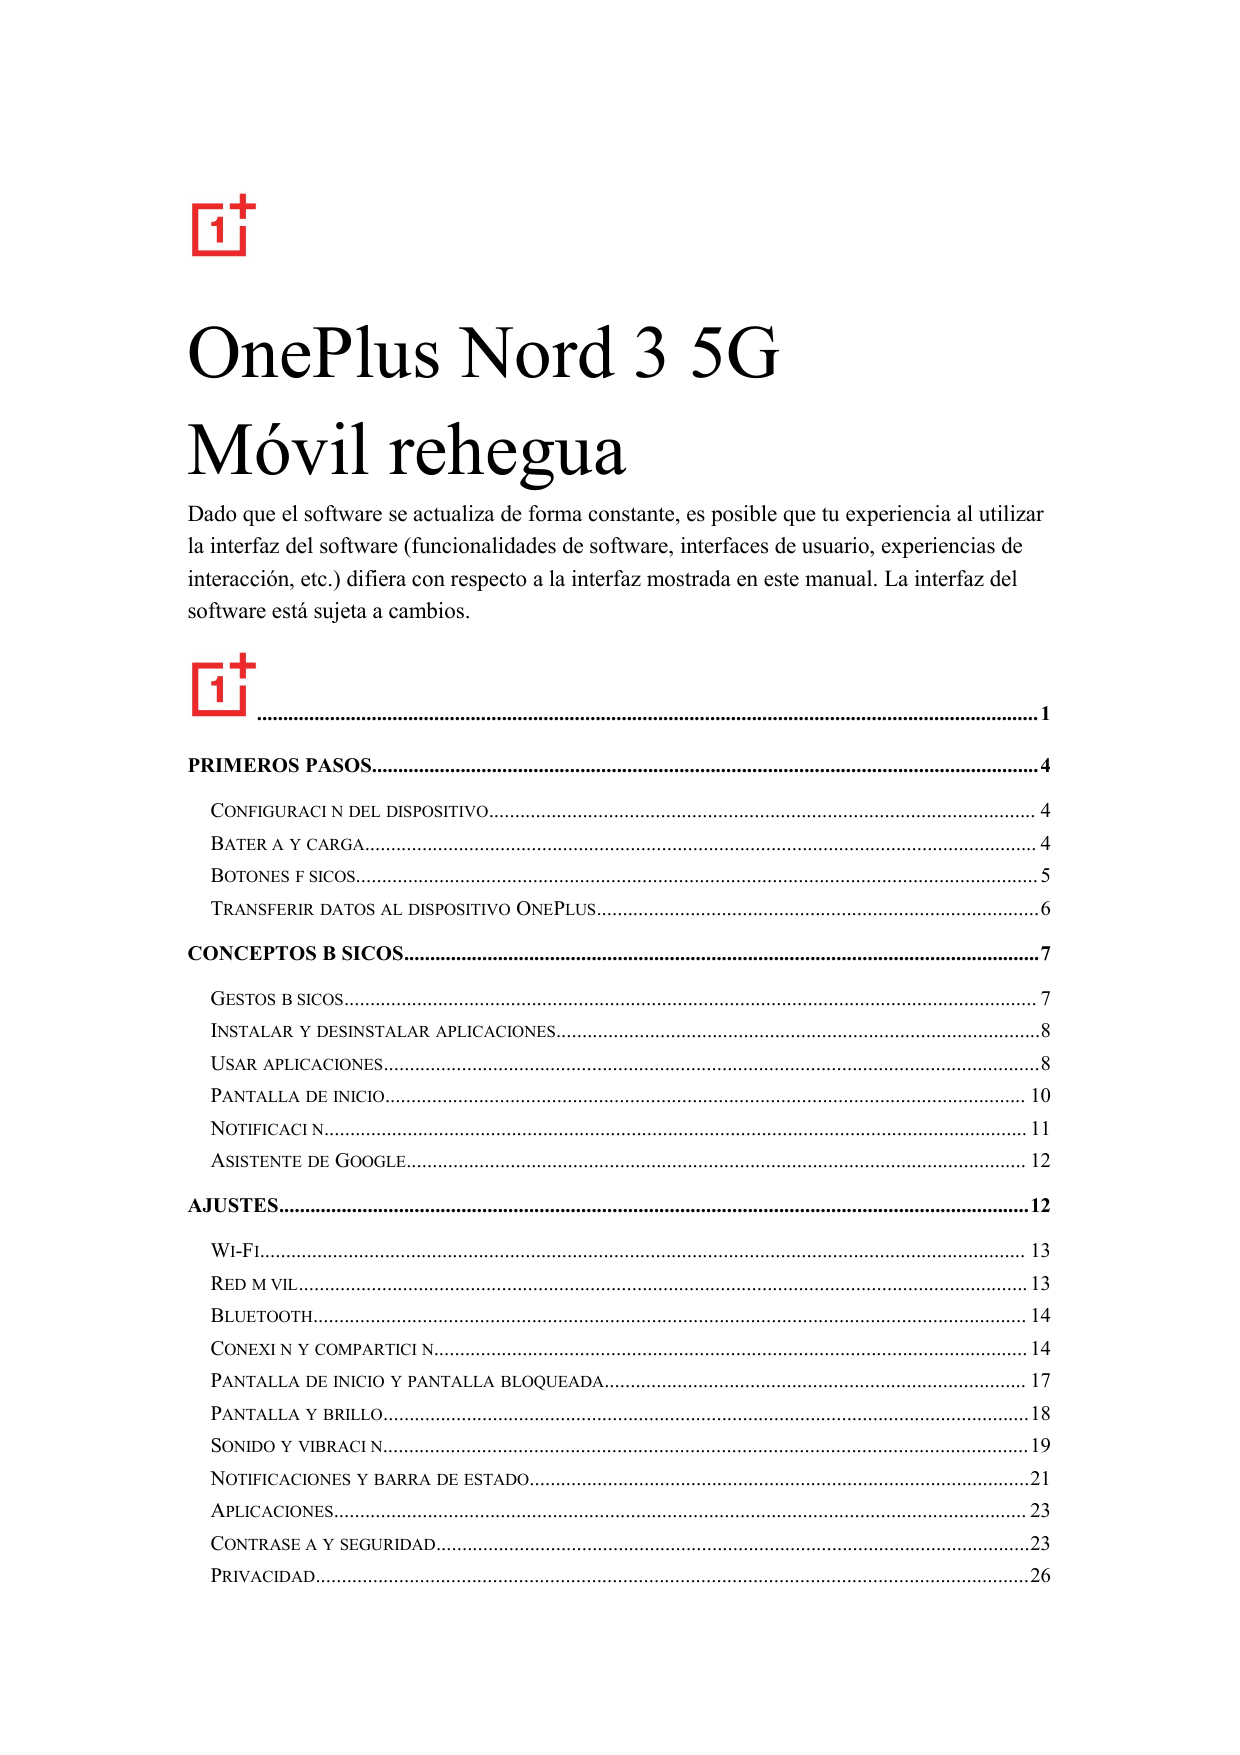 OnePlus Nord 3 5GMóvil reheguaDado que el software se actualiza de forma constante, es posible que tu experiencia al utilizarla 